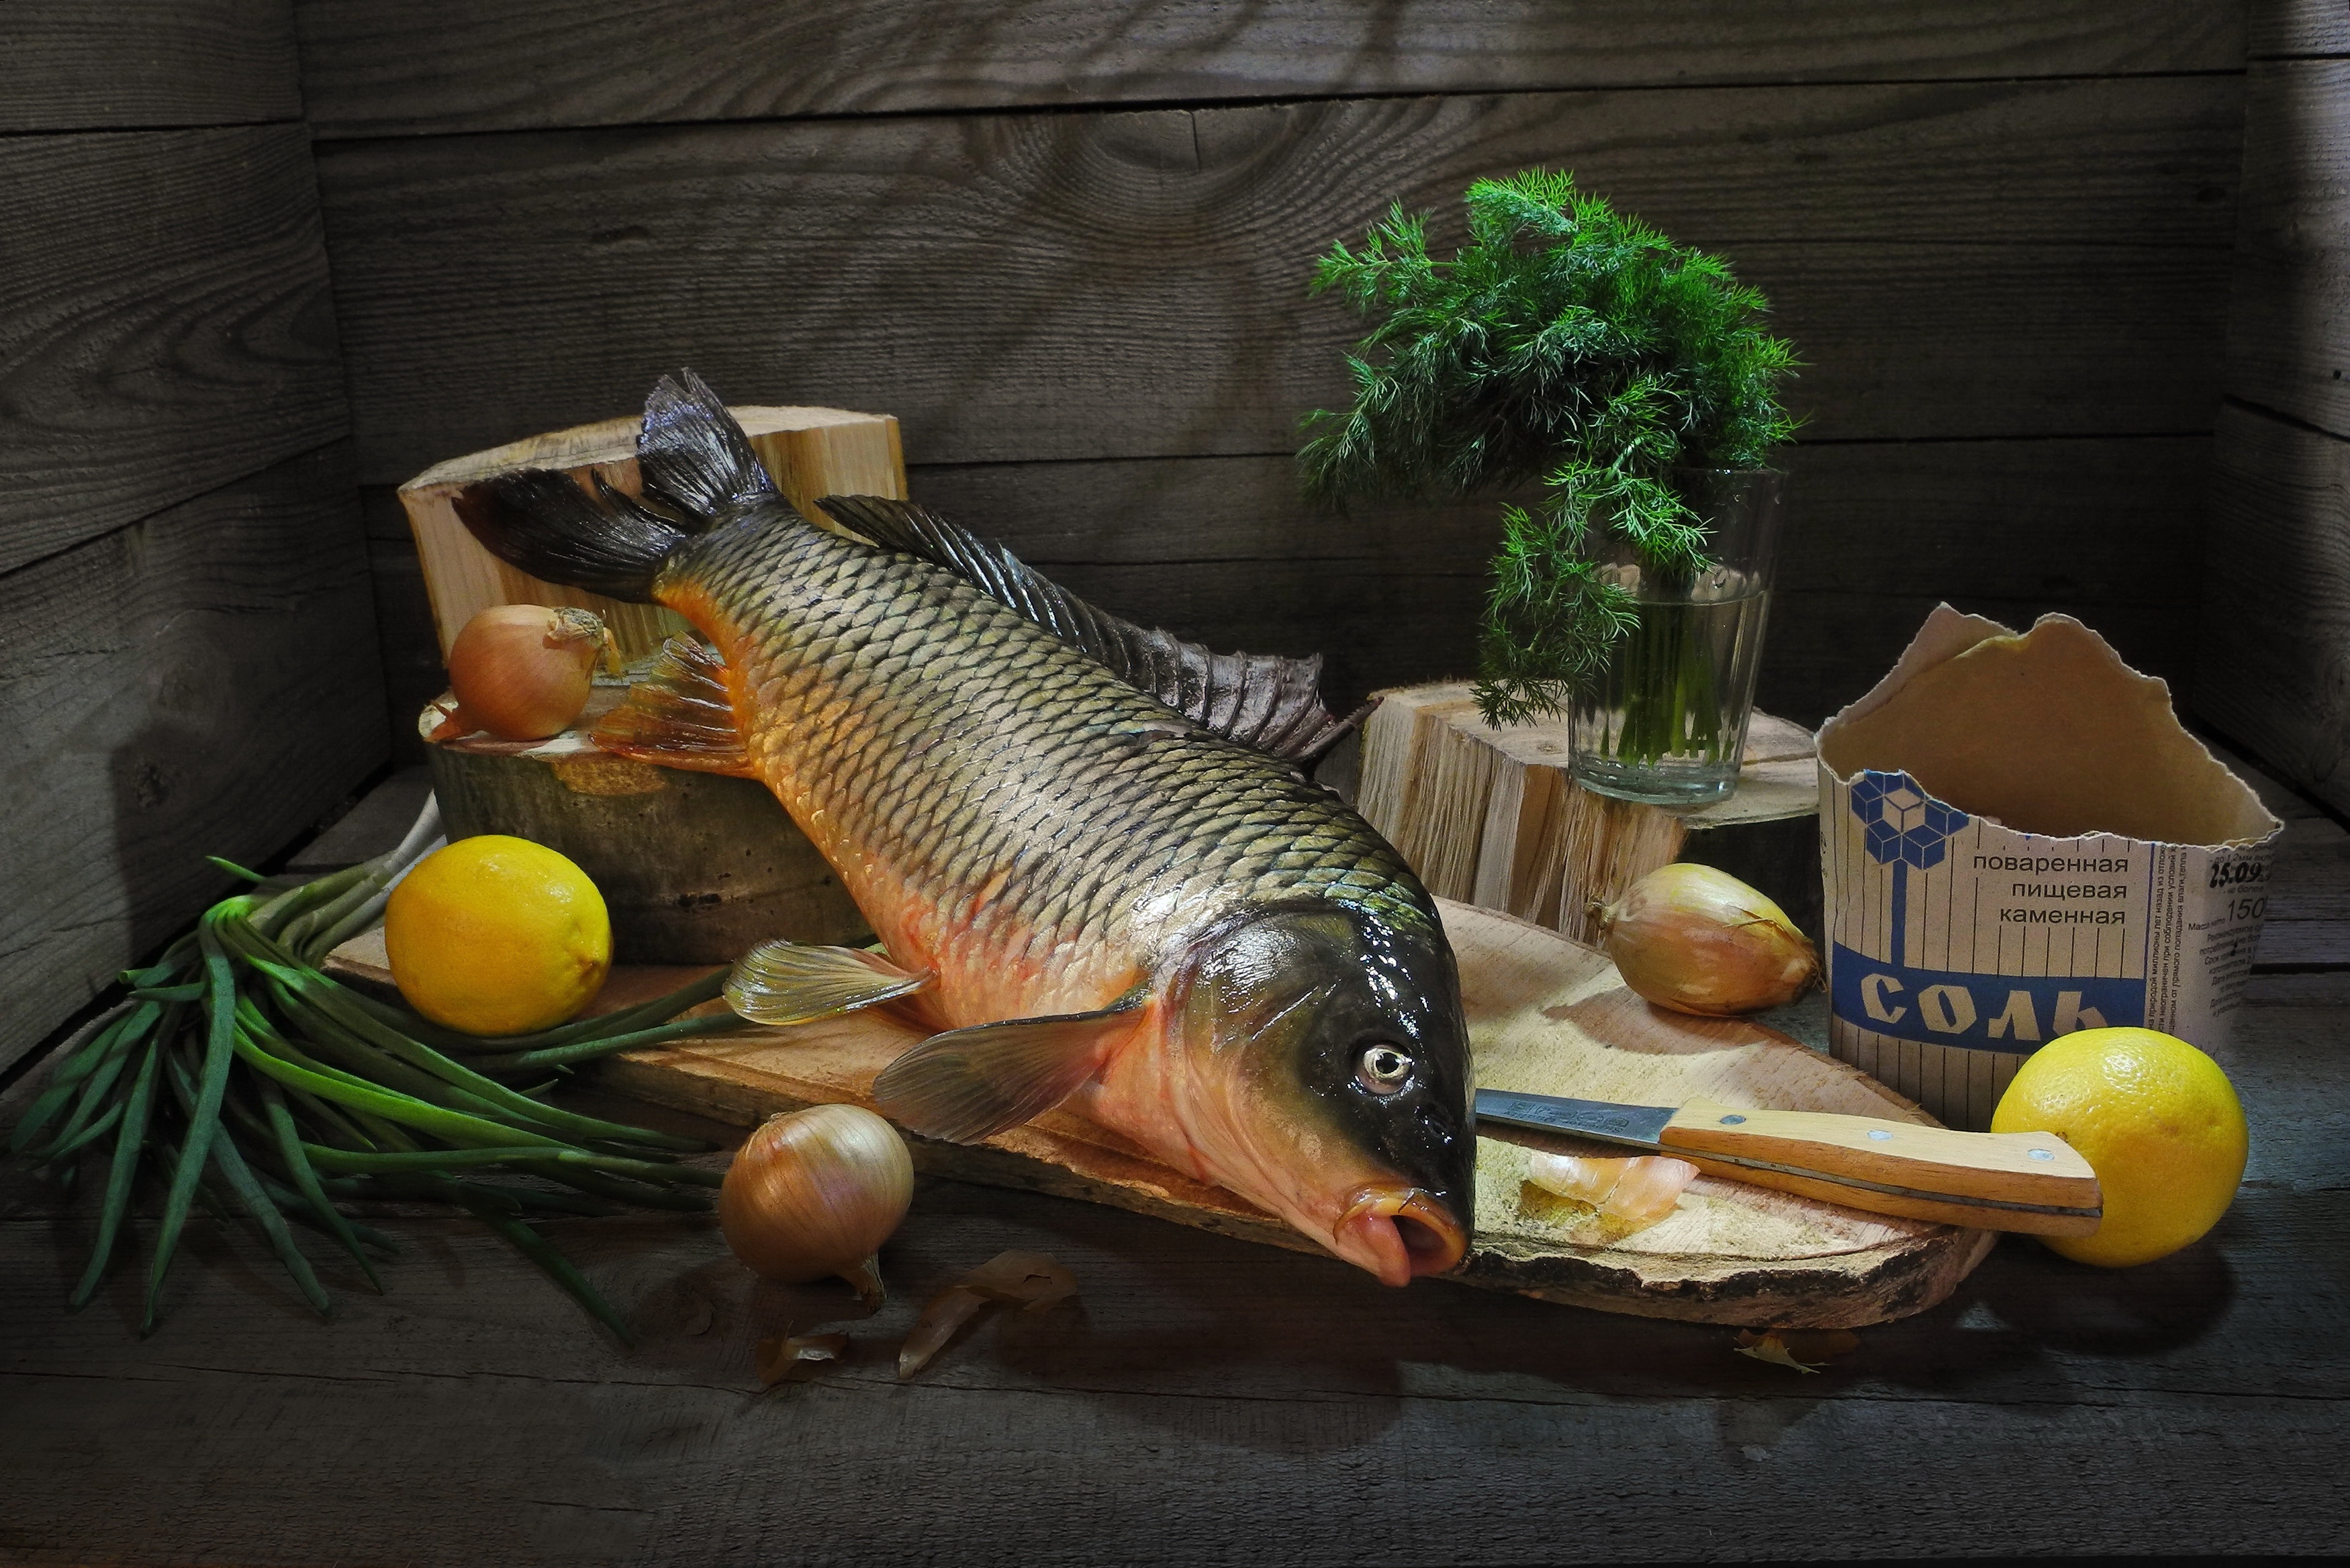 Скачать обои бесплатно Еда, Рыбы, Натюрморт, Лимон, Морепродукты картинка на рабочий стол ПК